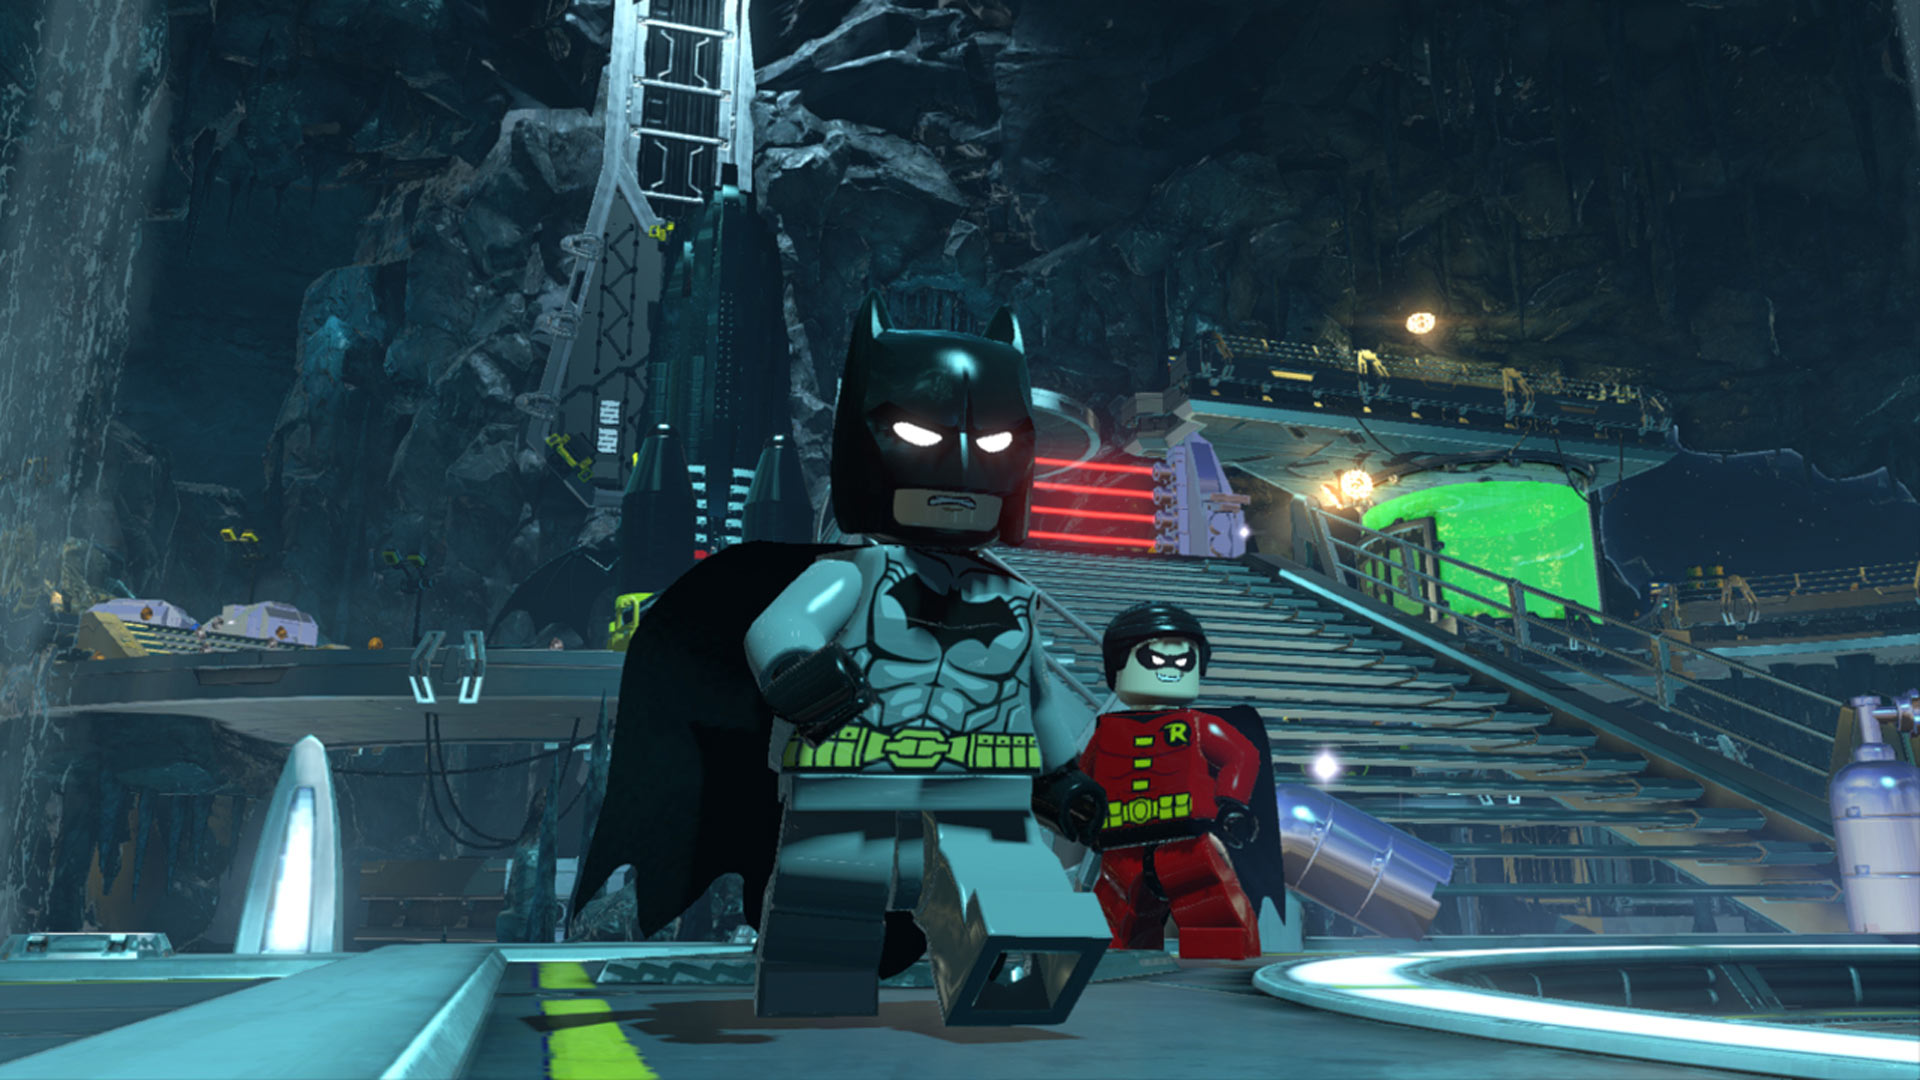 LEGO® Batman™ 3: Beyond Gotham on Steam